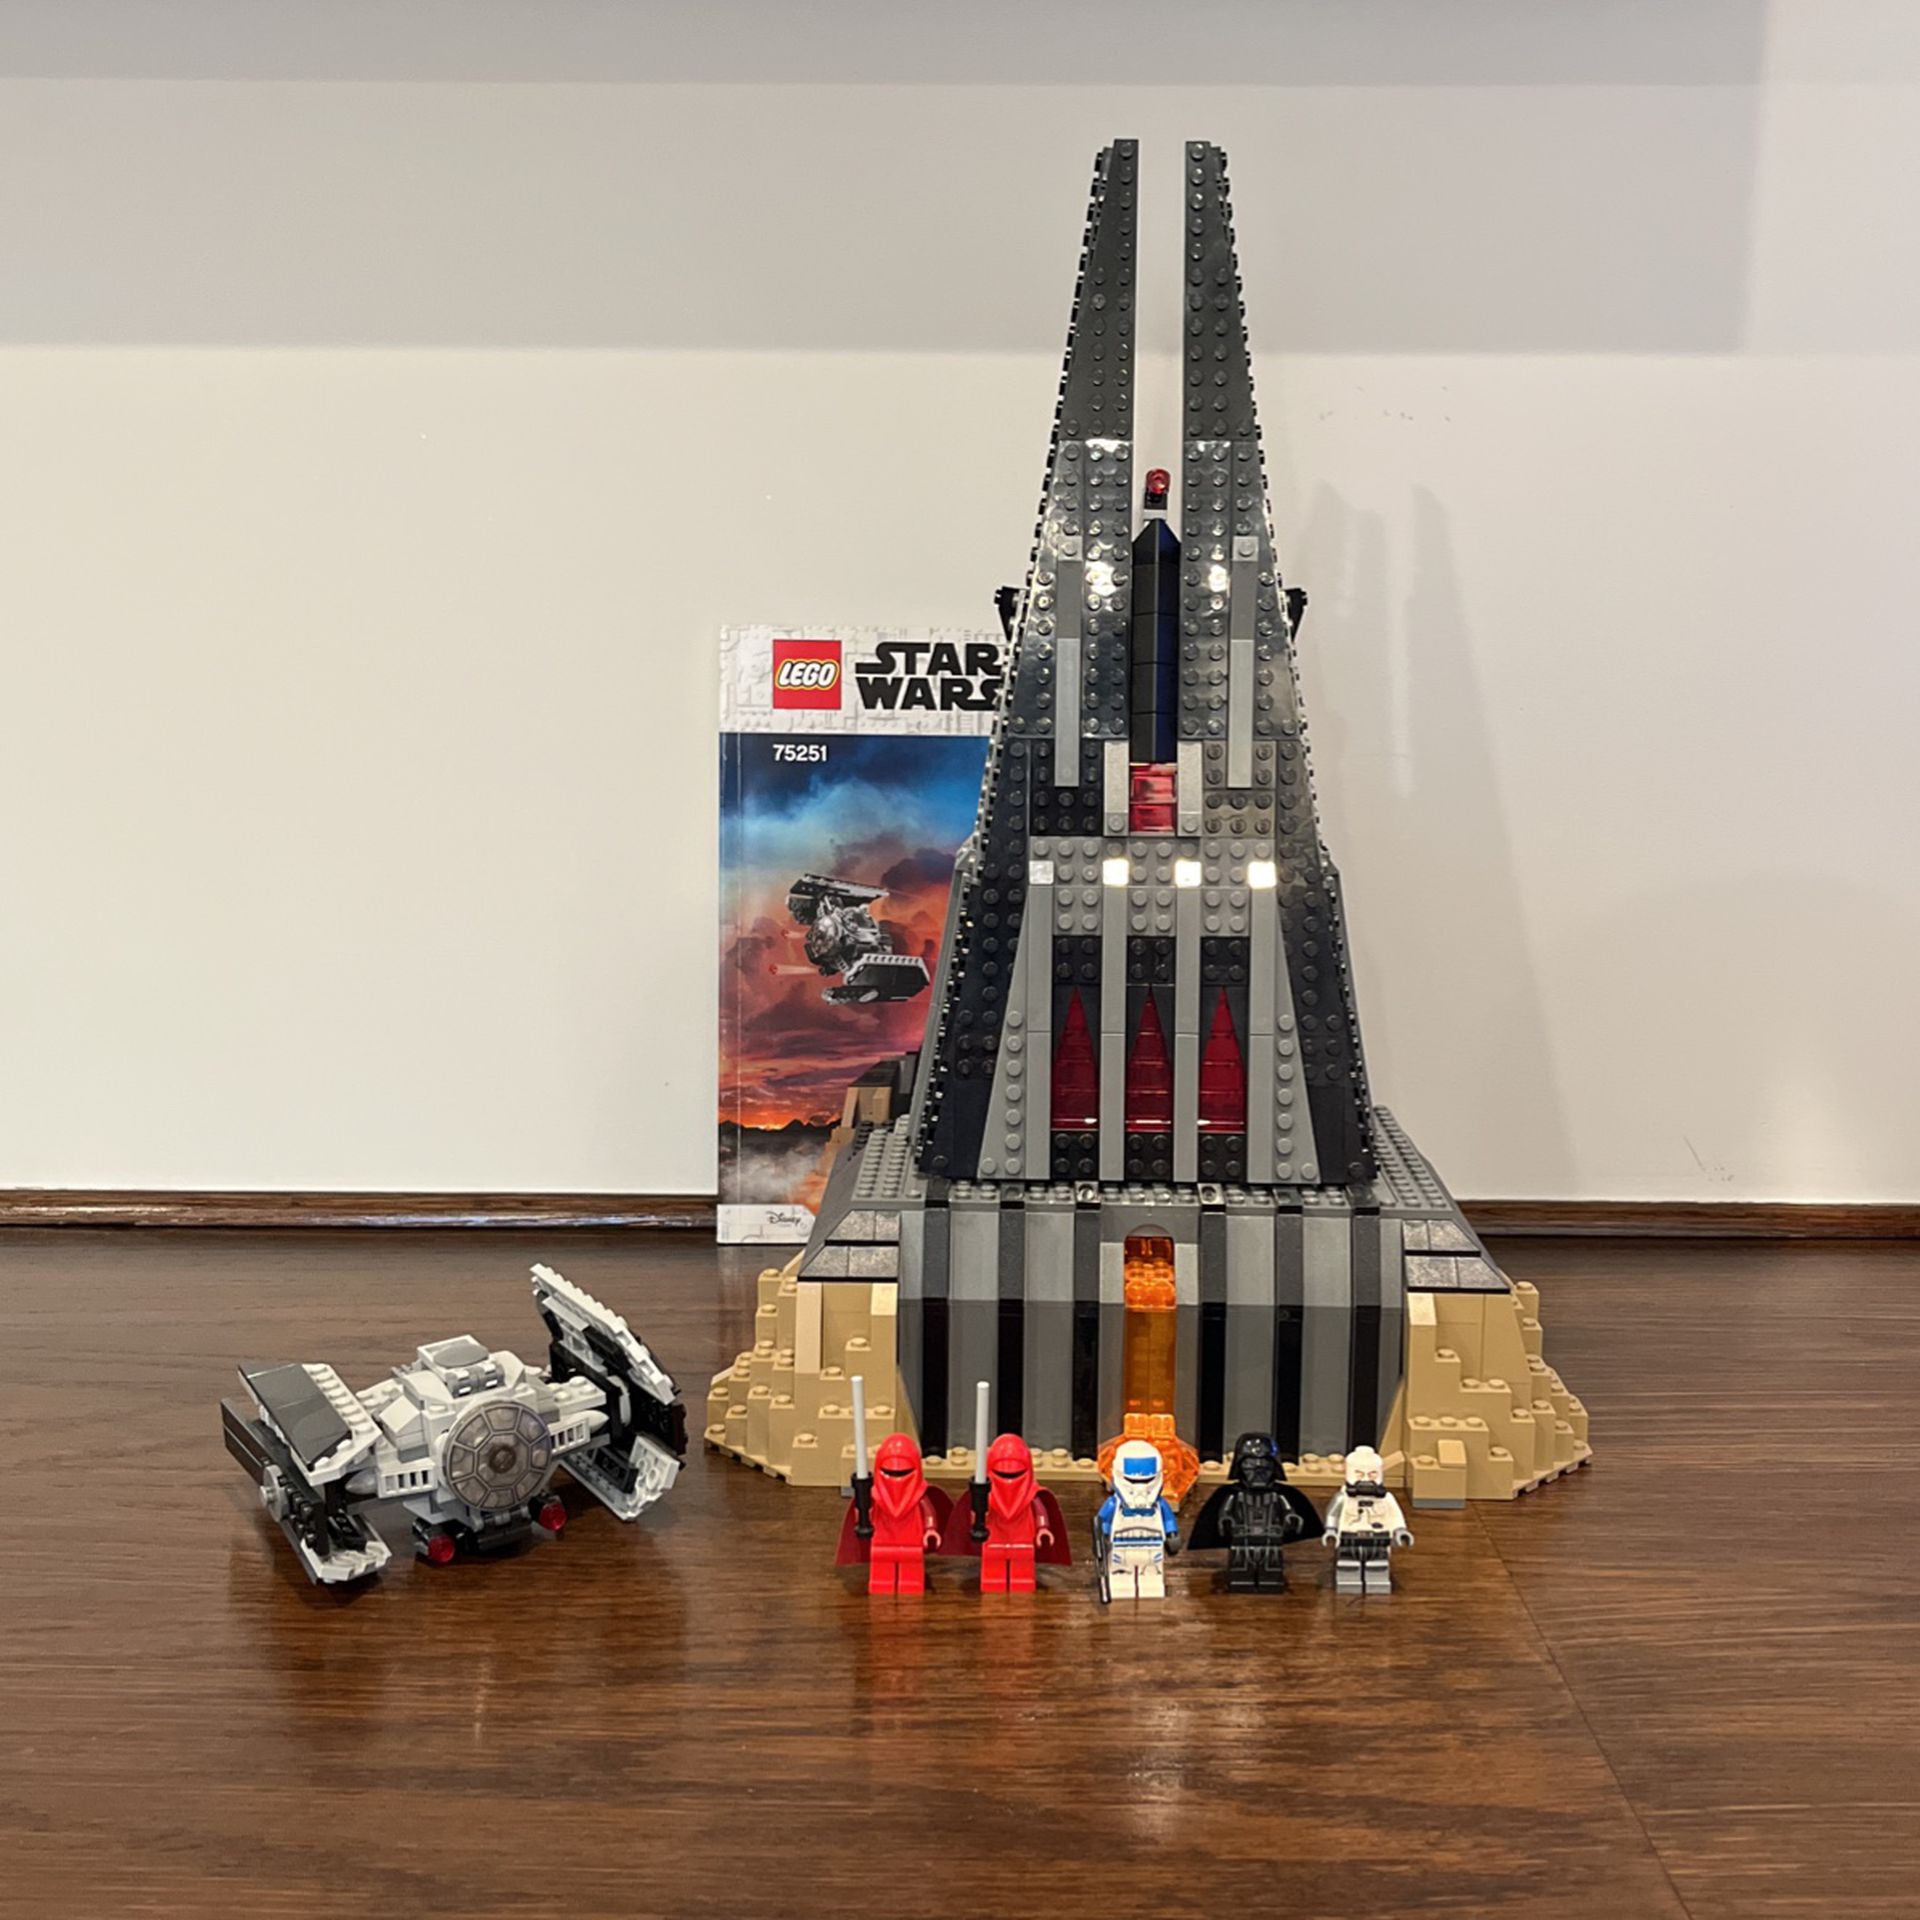 Higgins Sammenhængende Assassin Lego Star Wars 75251 Darth Vaders Castle for Sale in Los Angeles, CA -  OfferUp